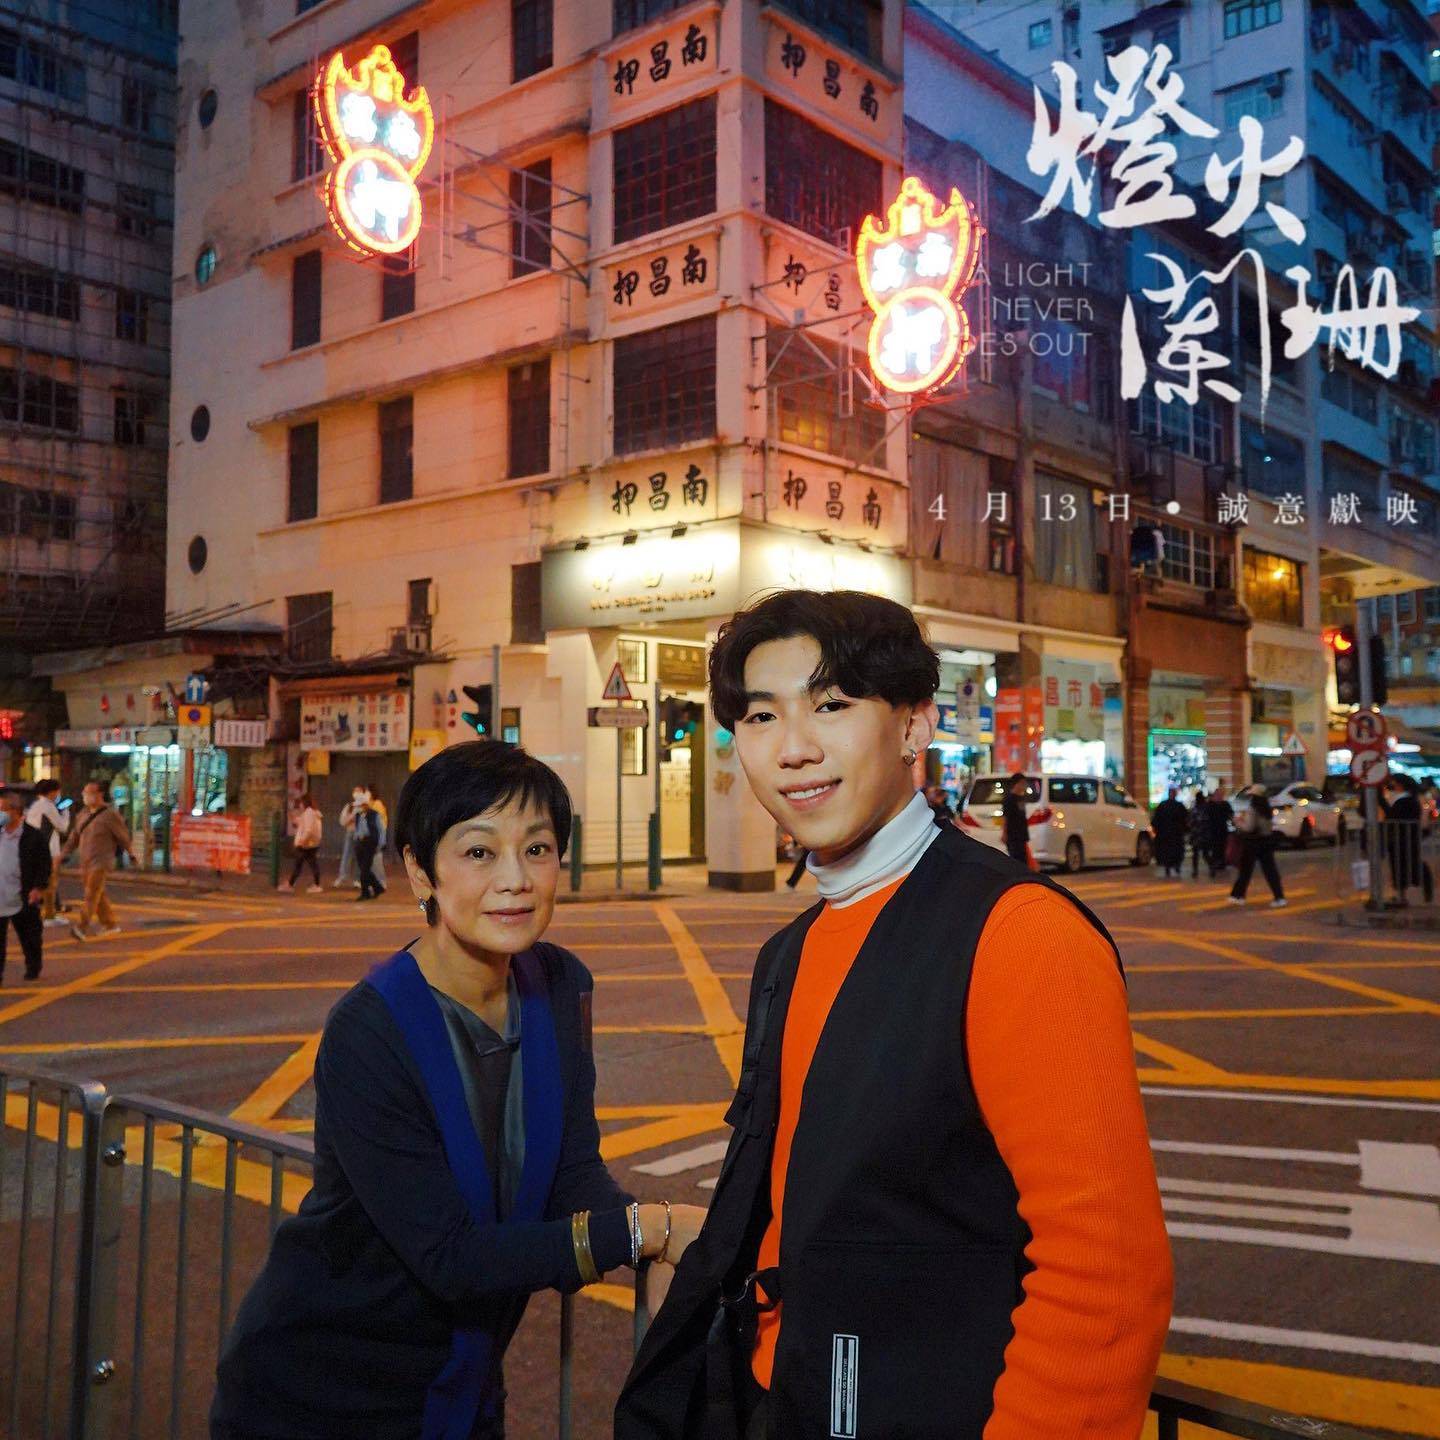 《燈火闌珊》由新晉導演曾憲寧執導、陳心遙監製，講述香港當地獨有霓虹燈招牌文化。